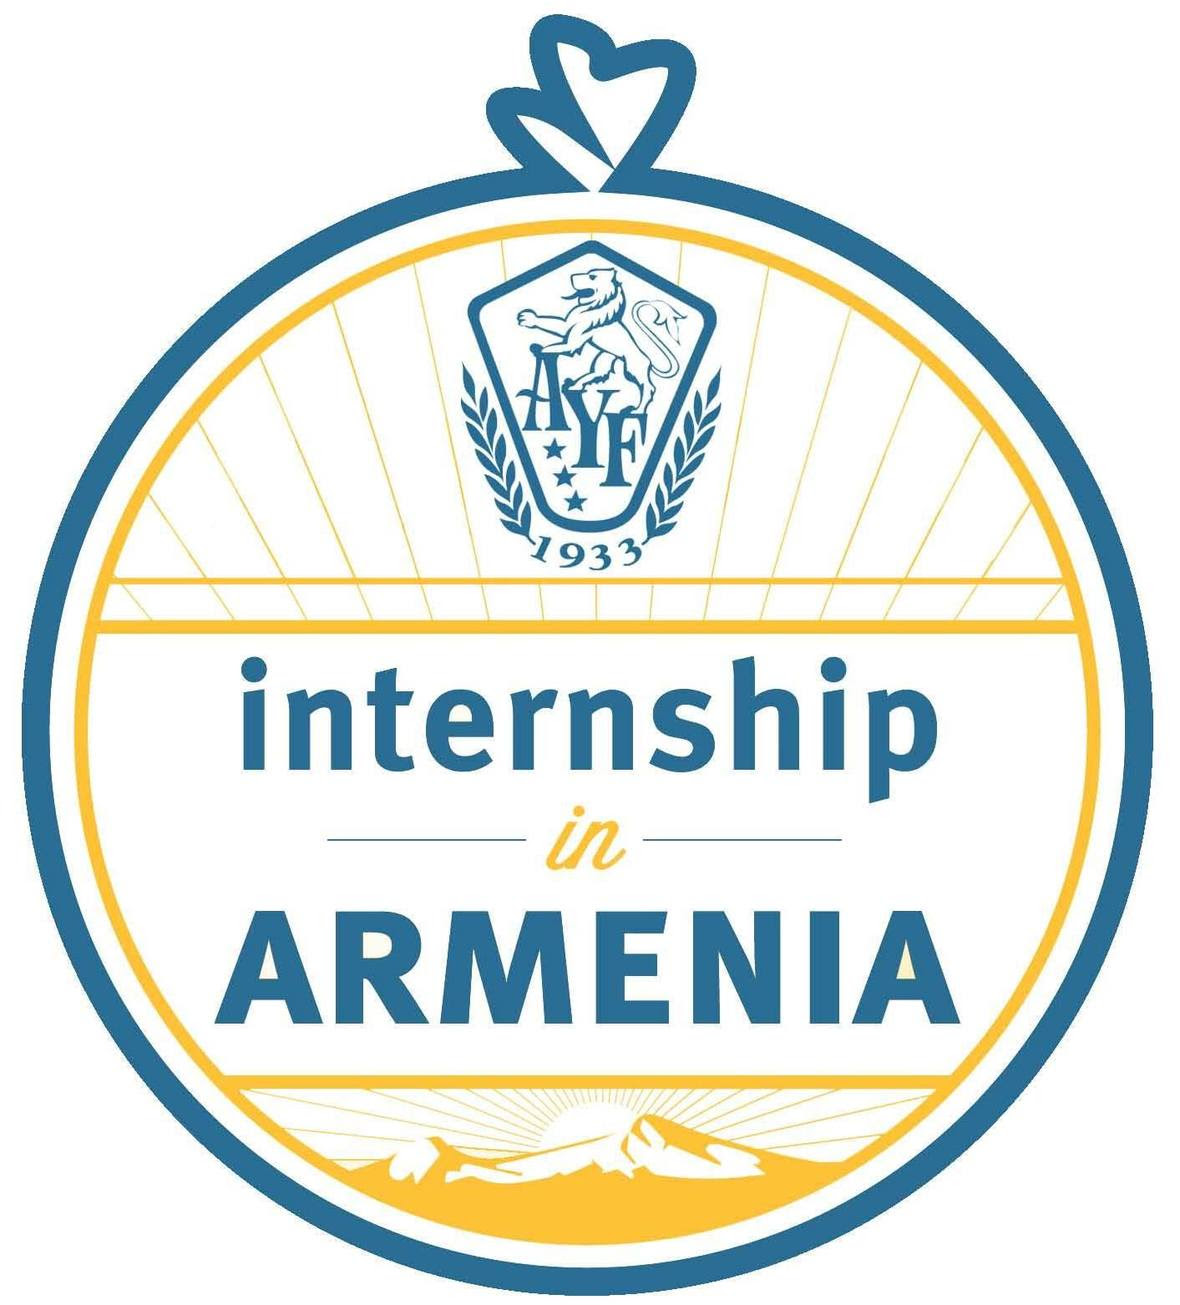 ayf internship logo